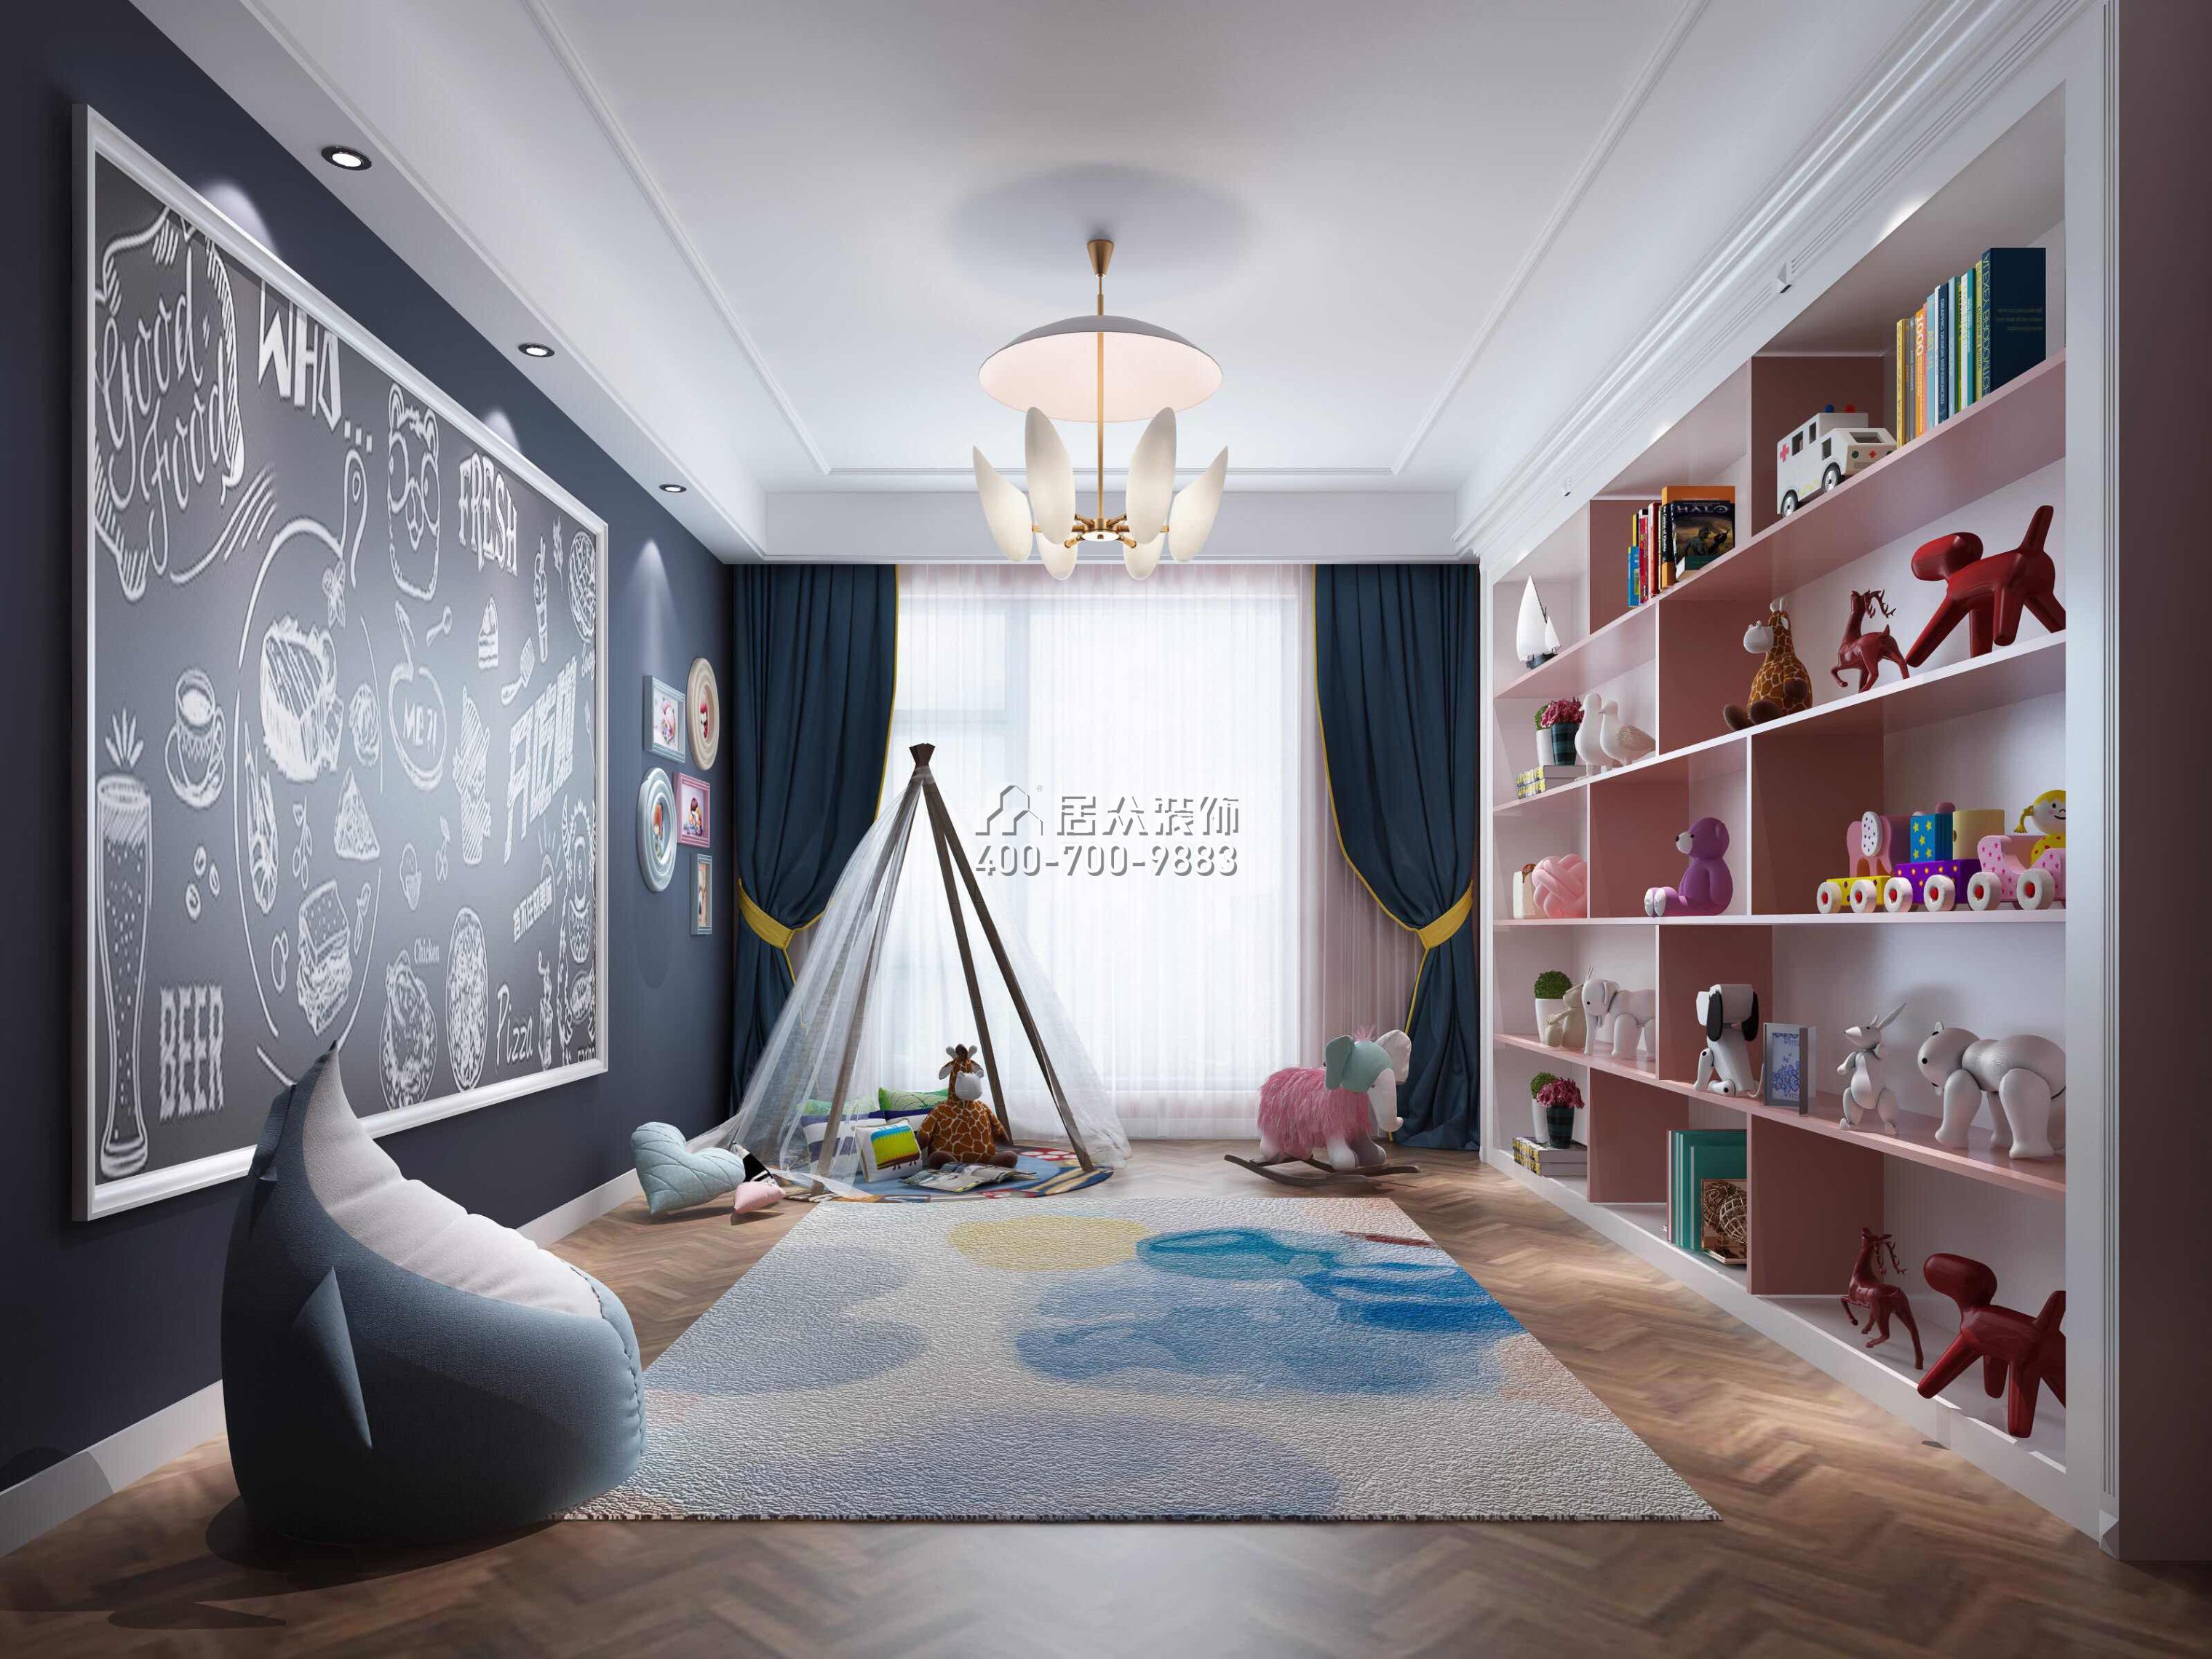 萬科皇馬酈宮241平方米現代簡約風格平層戶型兒童房裝修效果圖